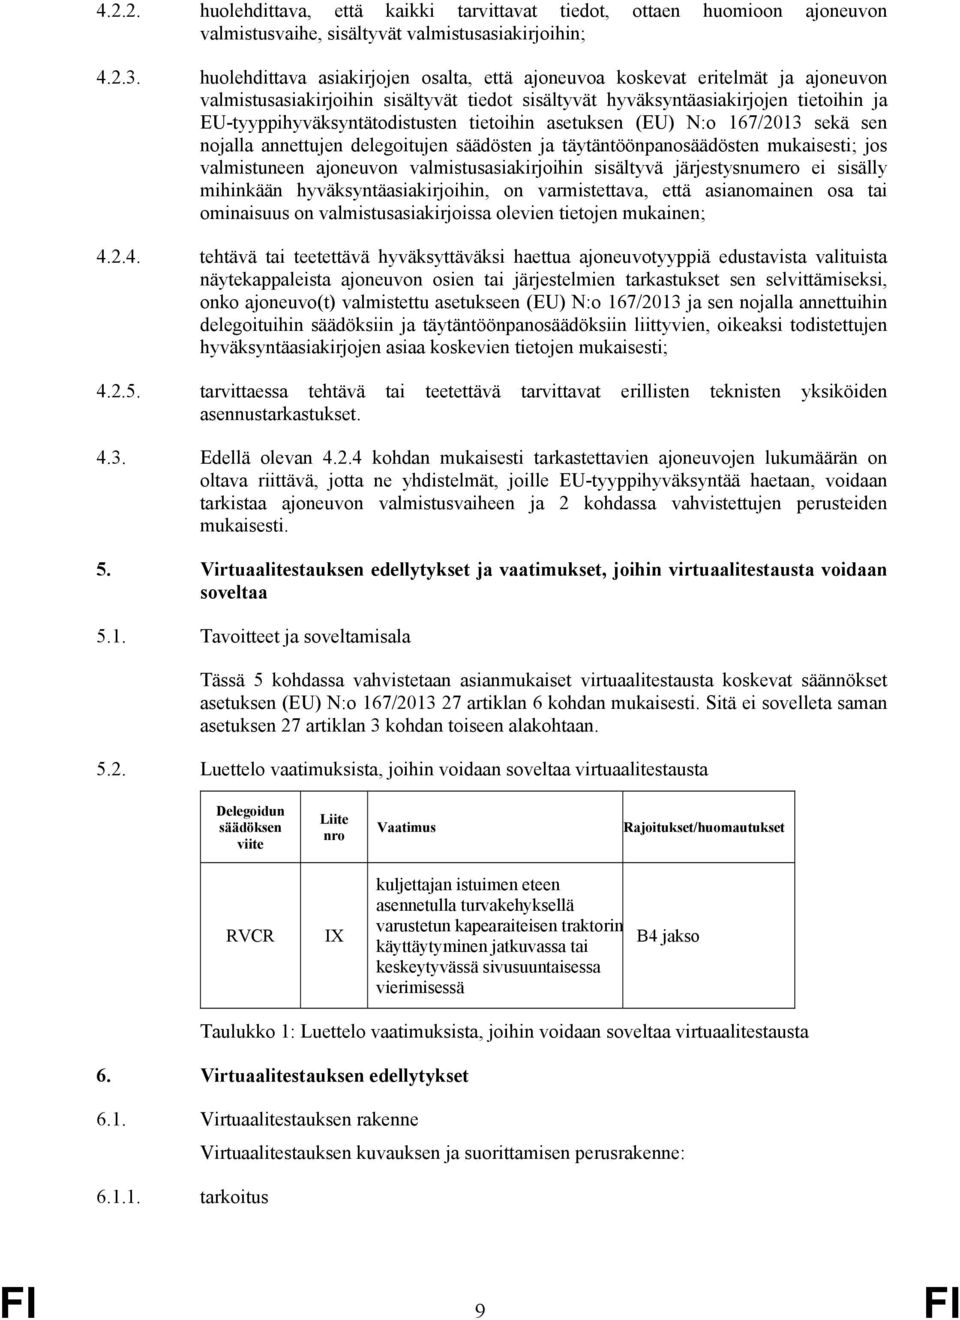 EU-tyyppihyväksyntätodistusten tietoihin asetuksen (EU) N:o 167/2013 sekä sen nojalla annettujen delegoitujen säädösten ja täytäntöönpanosäädösten mukaisesti; jos valmistuneen ajoneuvon